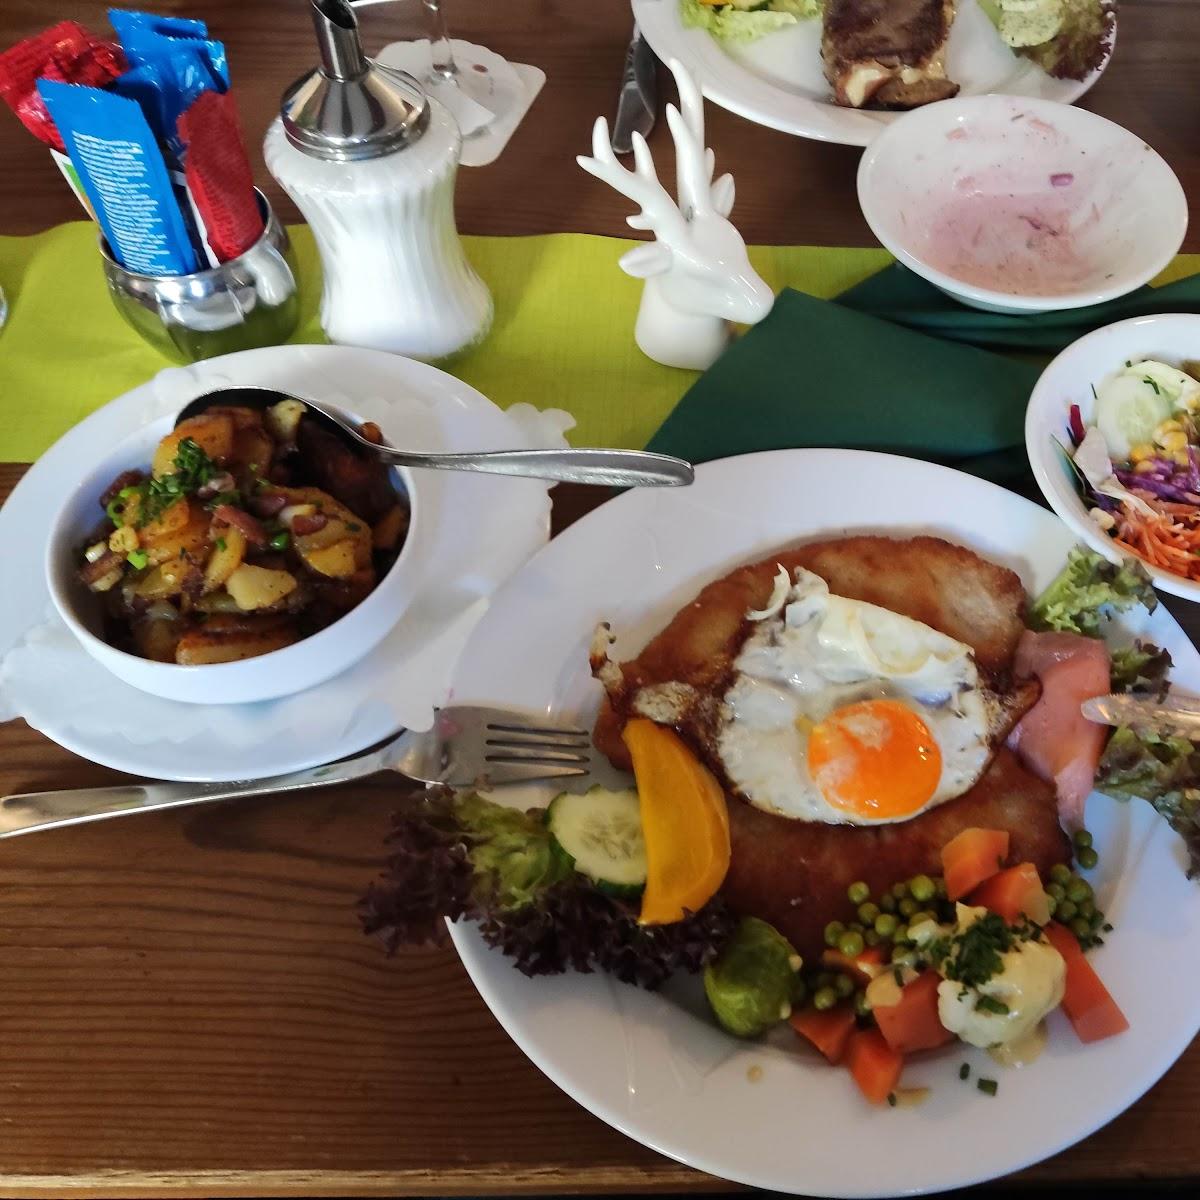 Restaurant "Jägerhof" in Wermelskirchen